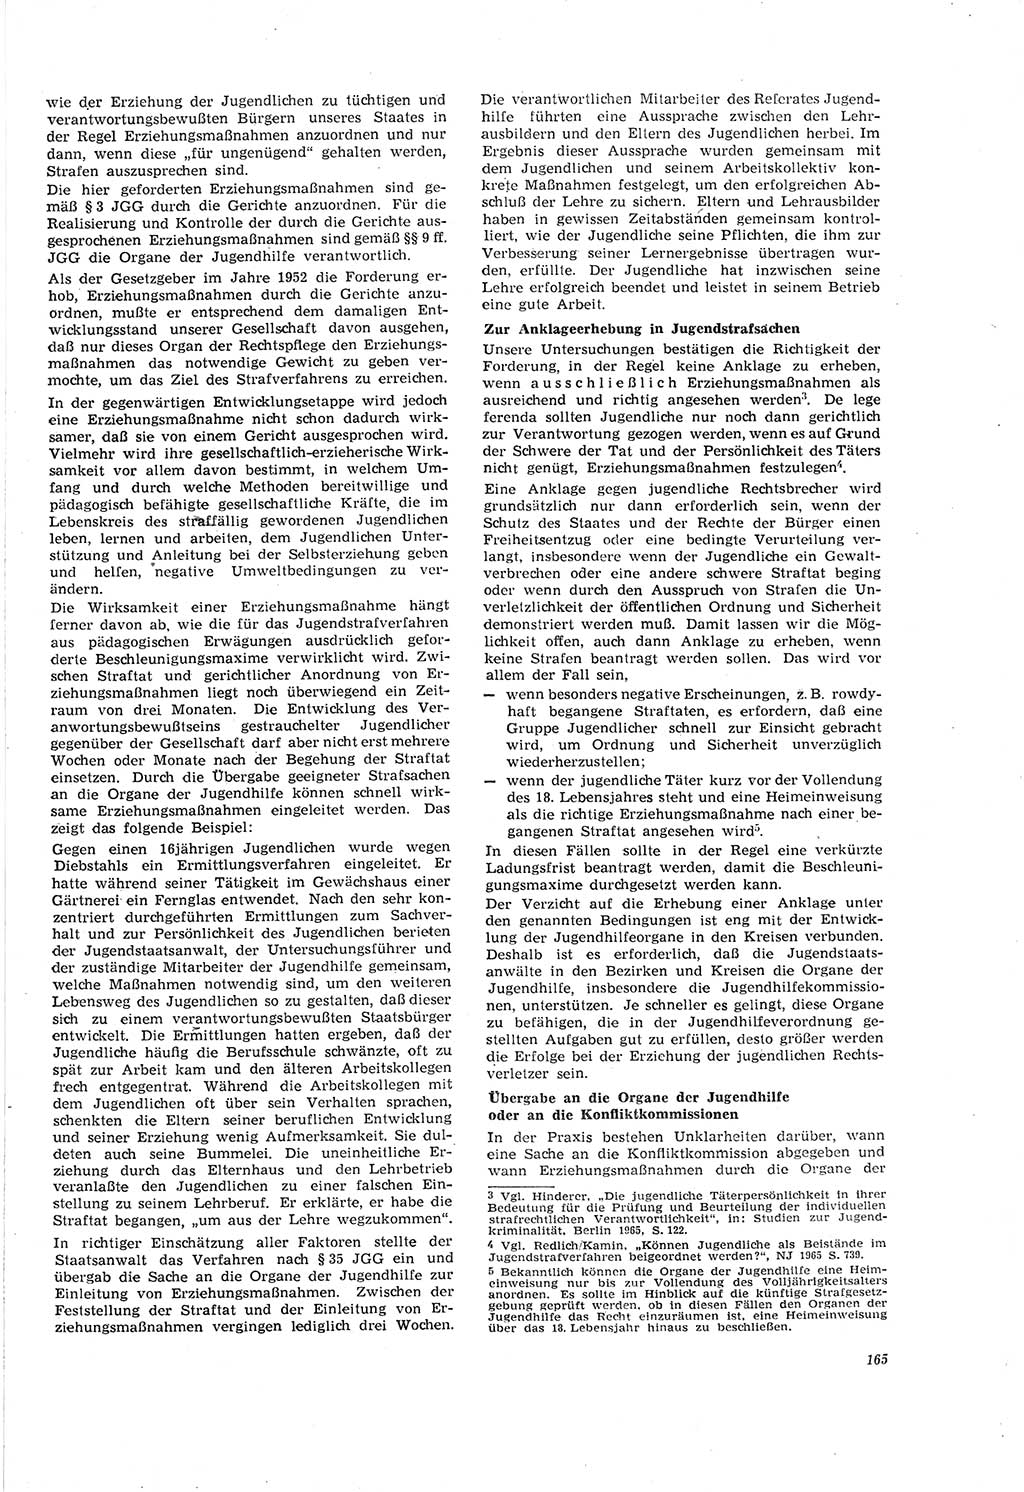 Neue Justiz (NJ), Zeitschrift für Recht und Rechtswissenschaft [Deutsche Demokratische Republik (DDR)], 20. Jahrgang 1966, Seite 165 (NJ DDR 1966, S. 165)